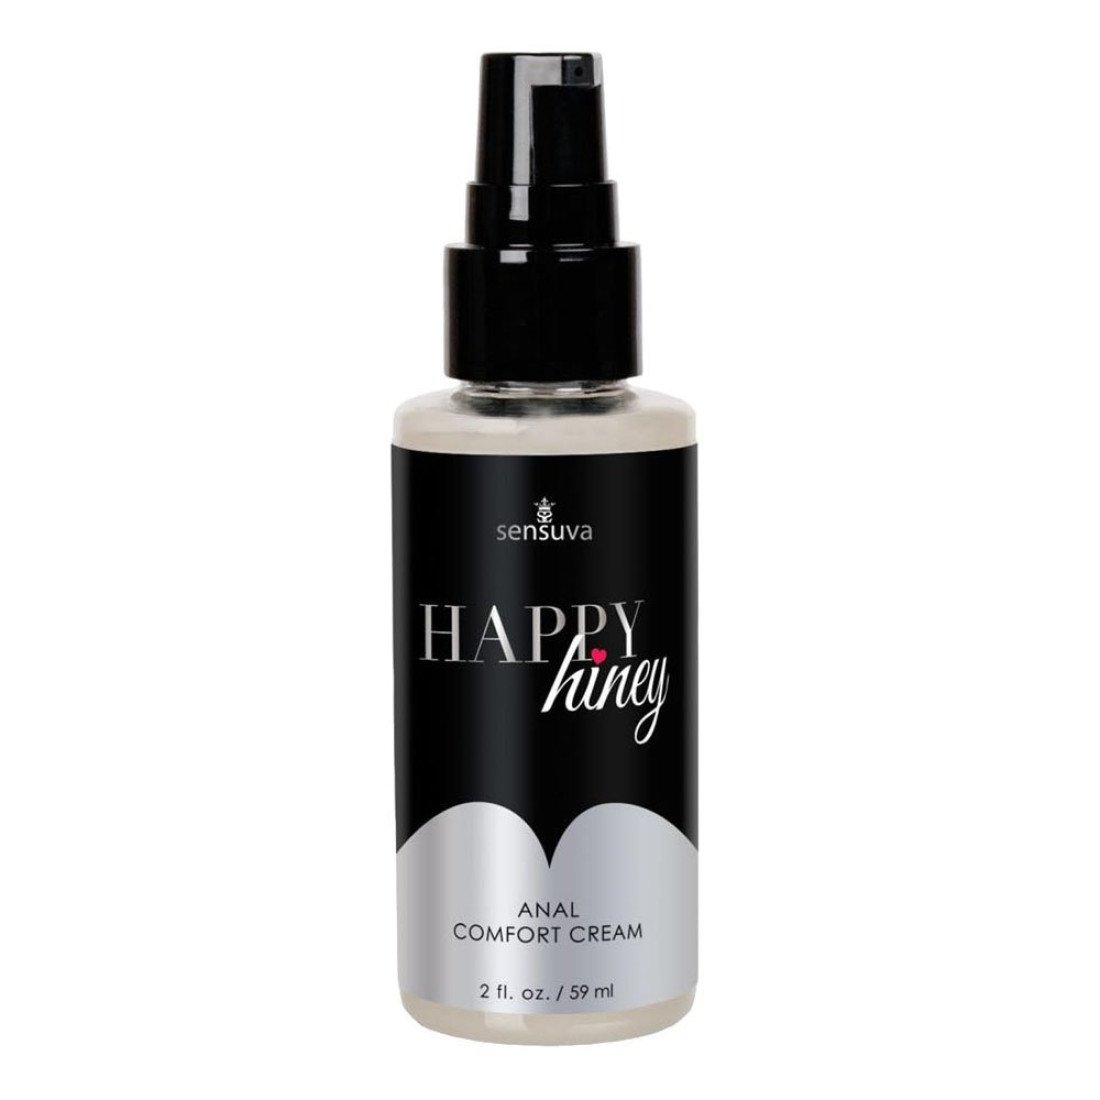 Vyšnių kvapo analinis kremas „Happy Hiney“, 59 ml - Sensuva